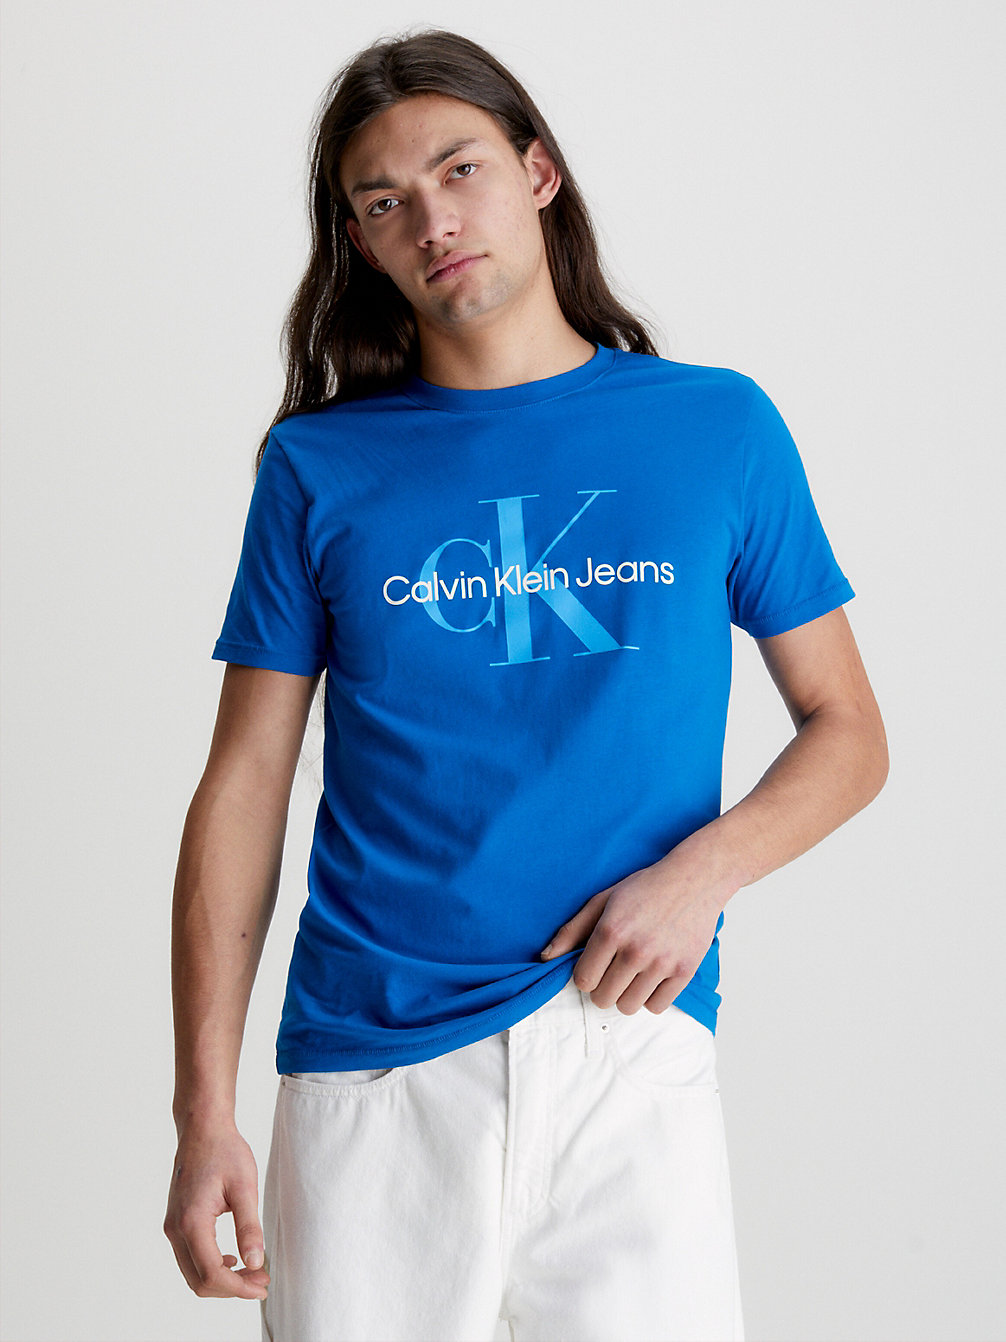 TARPS BLUE Schmales Logo-T-Shirt Aus Bio-Baumwolle undefined Herren Calvin Klein